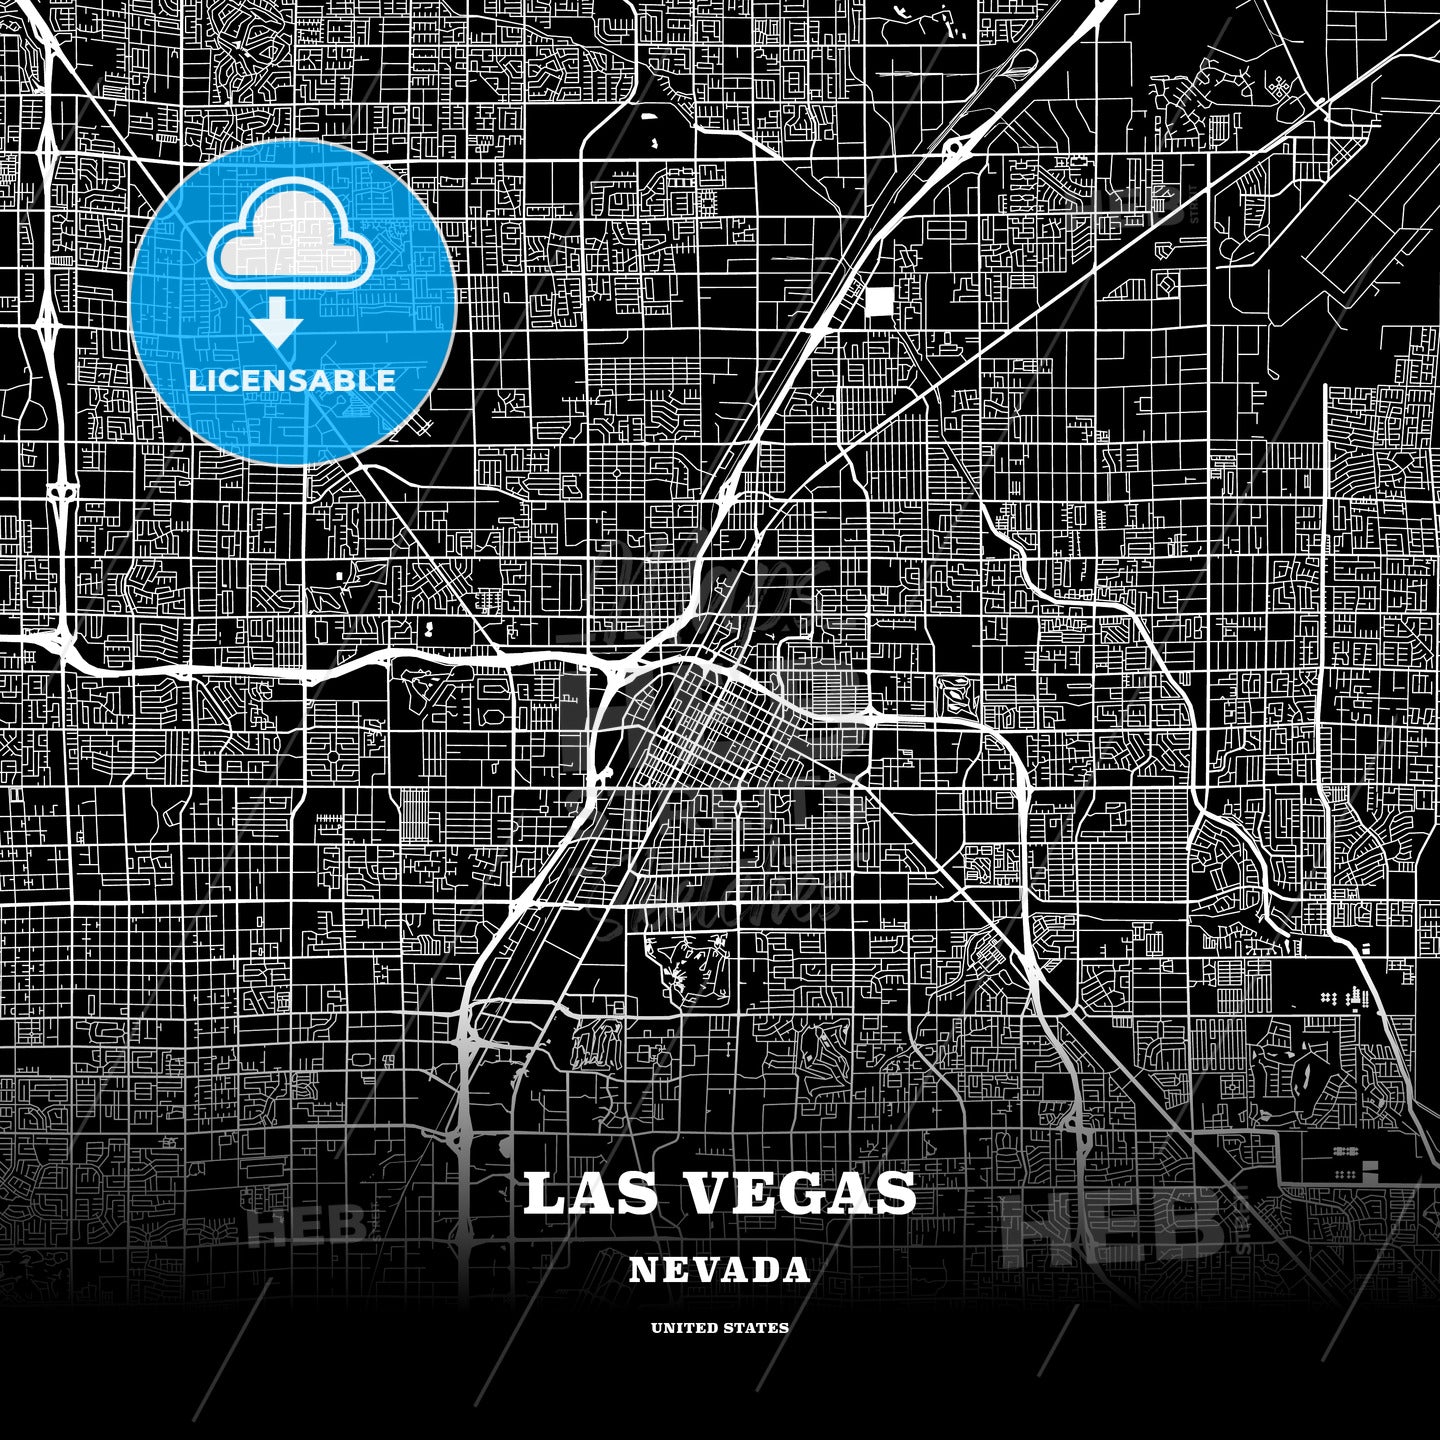 Las Vegas, Nevada, USA map